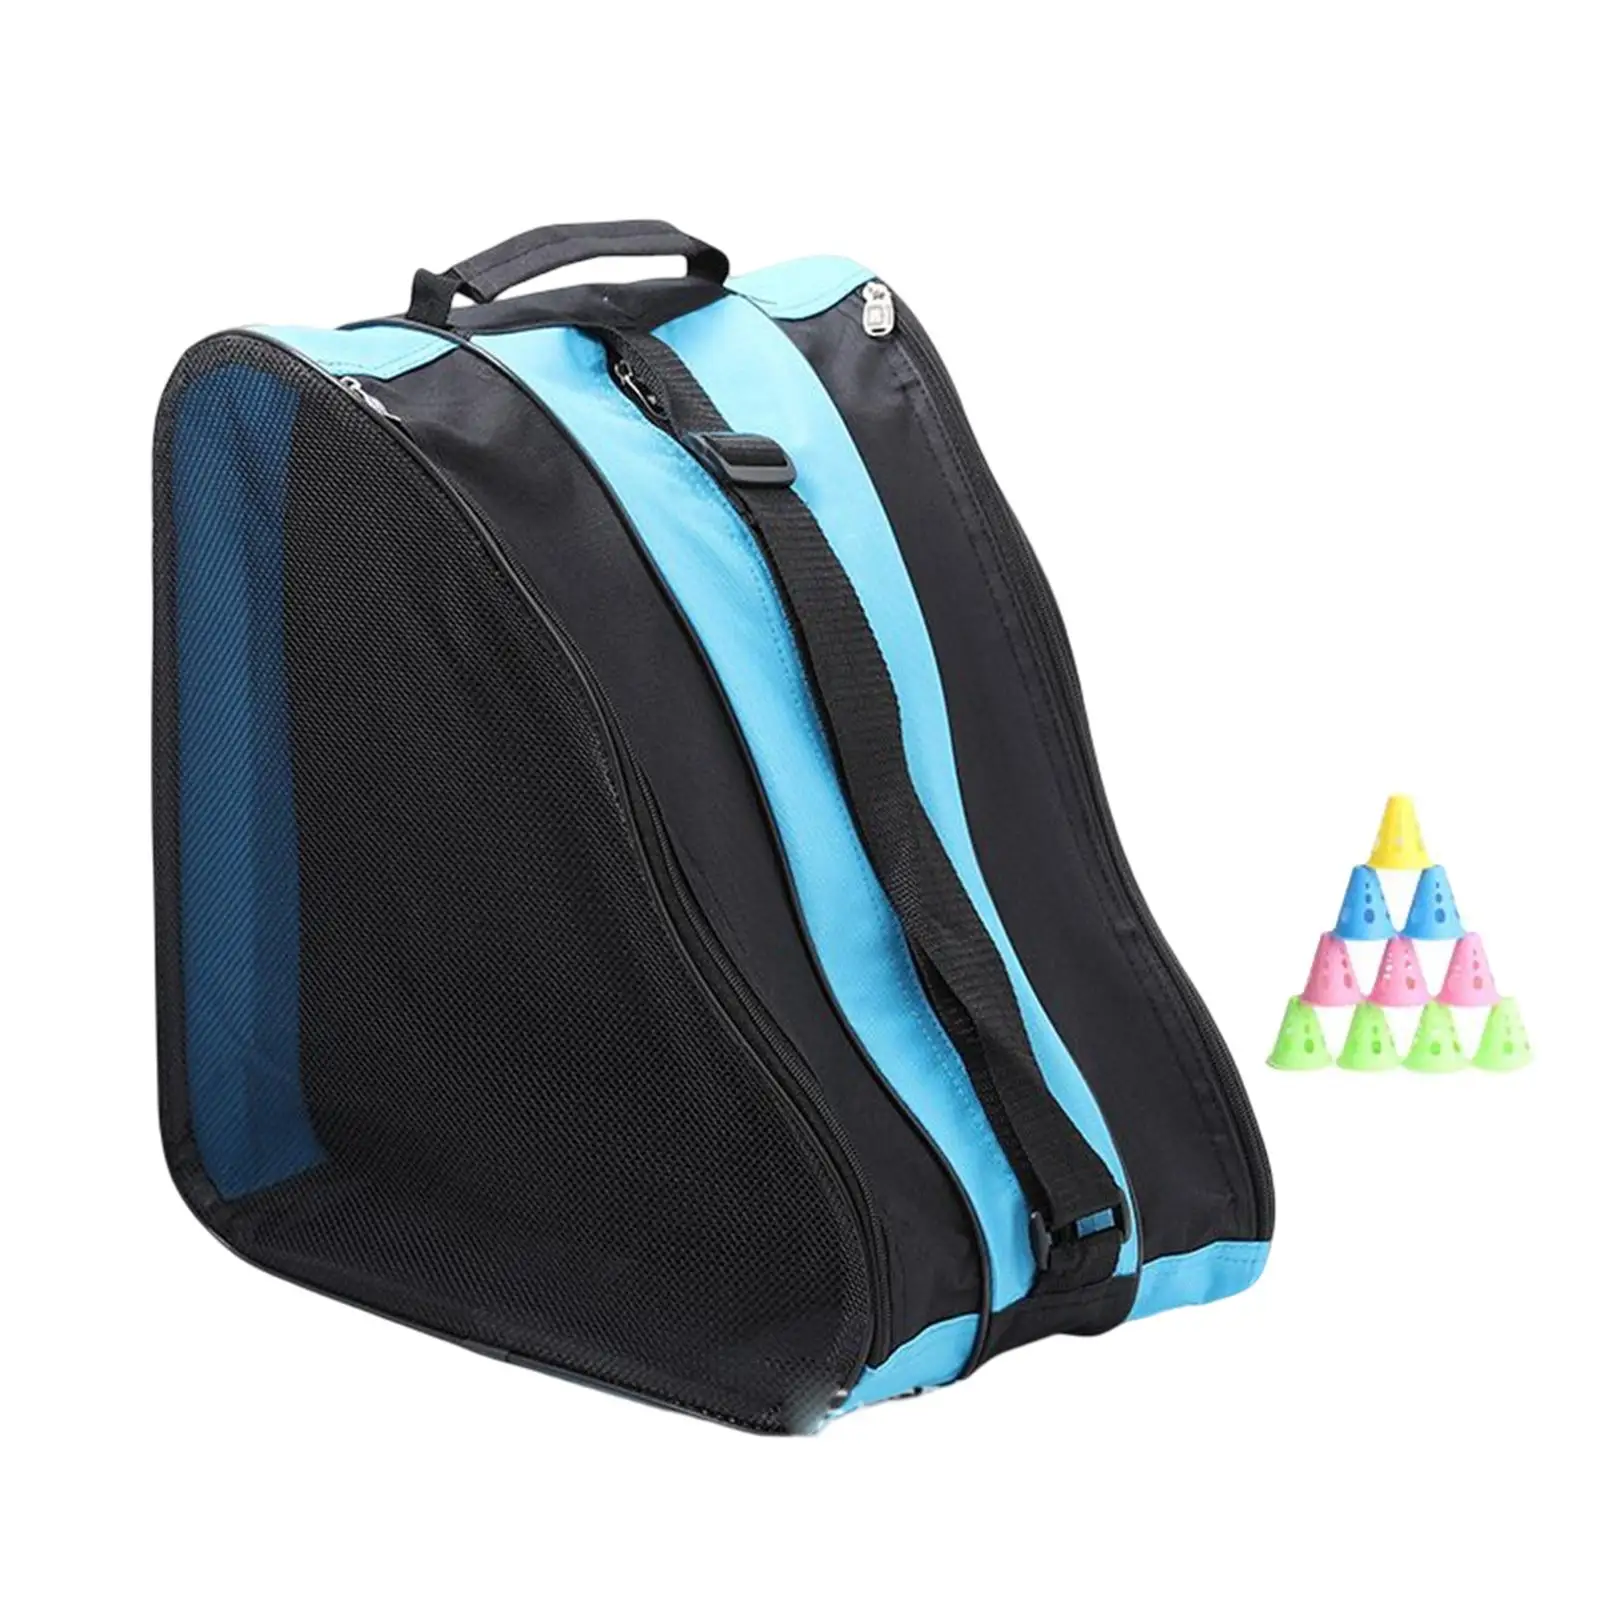 Roller Skate Bag Breathable Ice Skate Bag Heavy Duty Adjustable Shoulder Strap and Top Handle, Triangle Skate Bag for Boys Girls